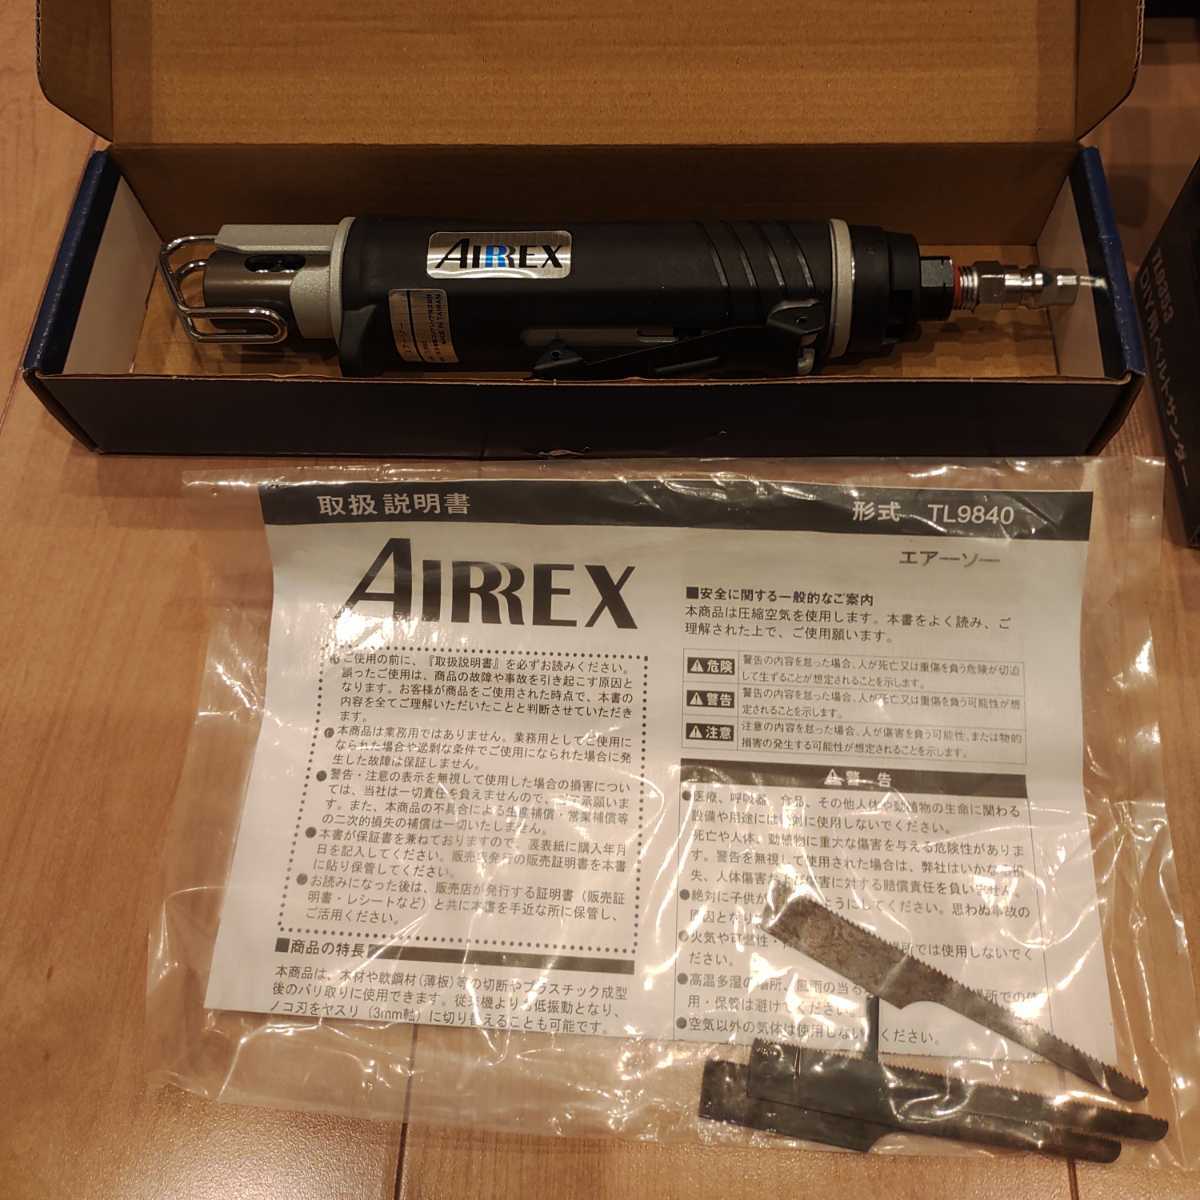 アネスト岩田 AIRREX エアーツールセット ドリル TL9006 ベルト ...